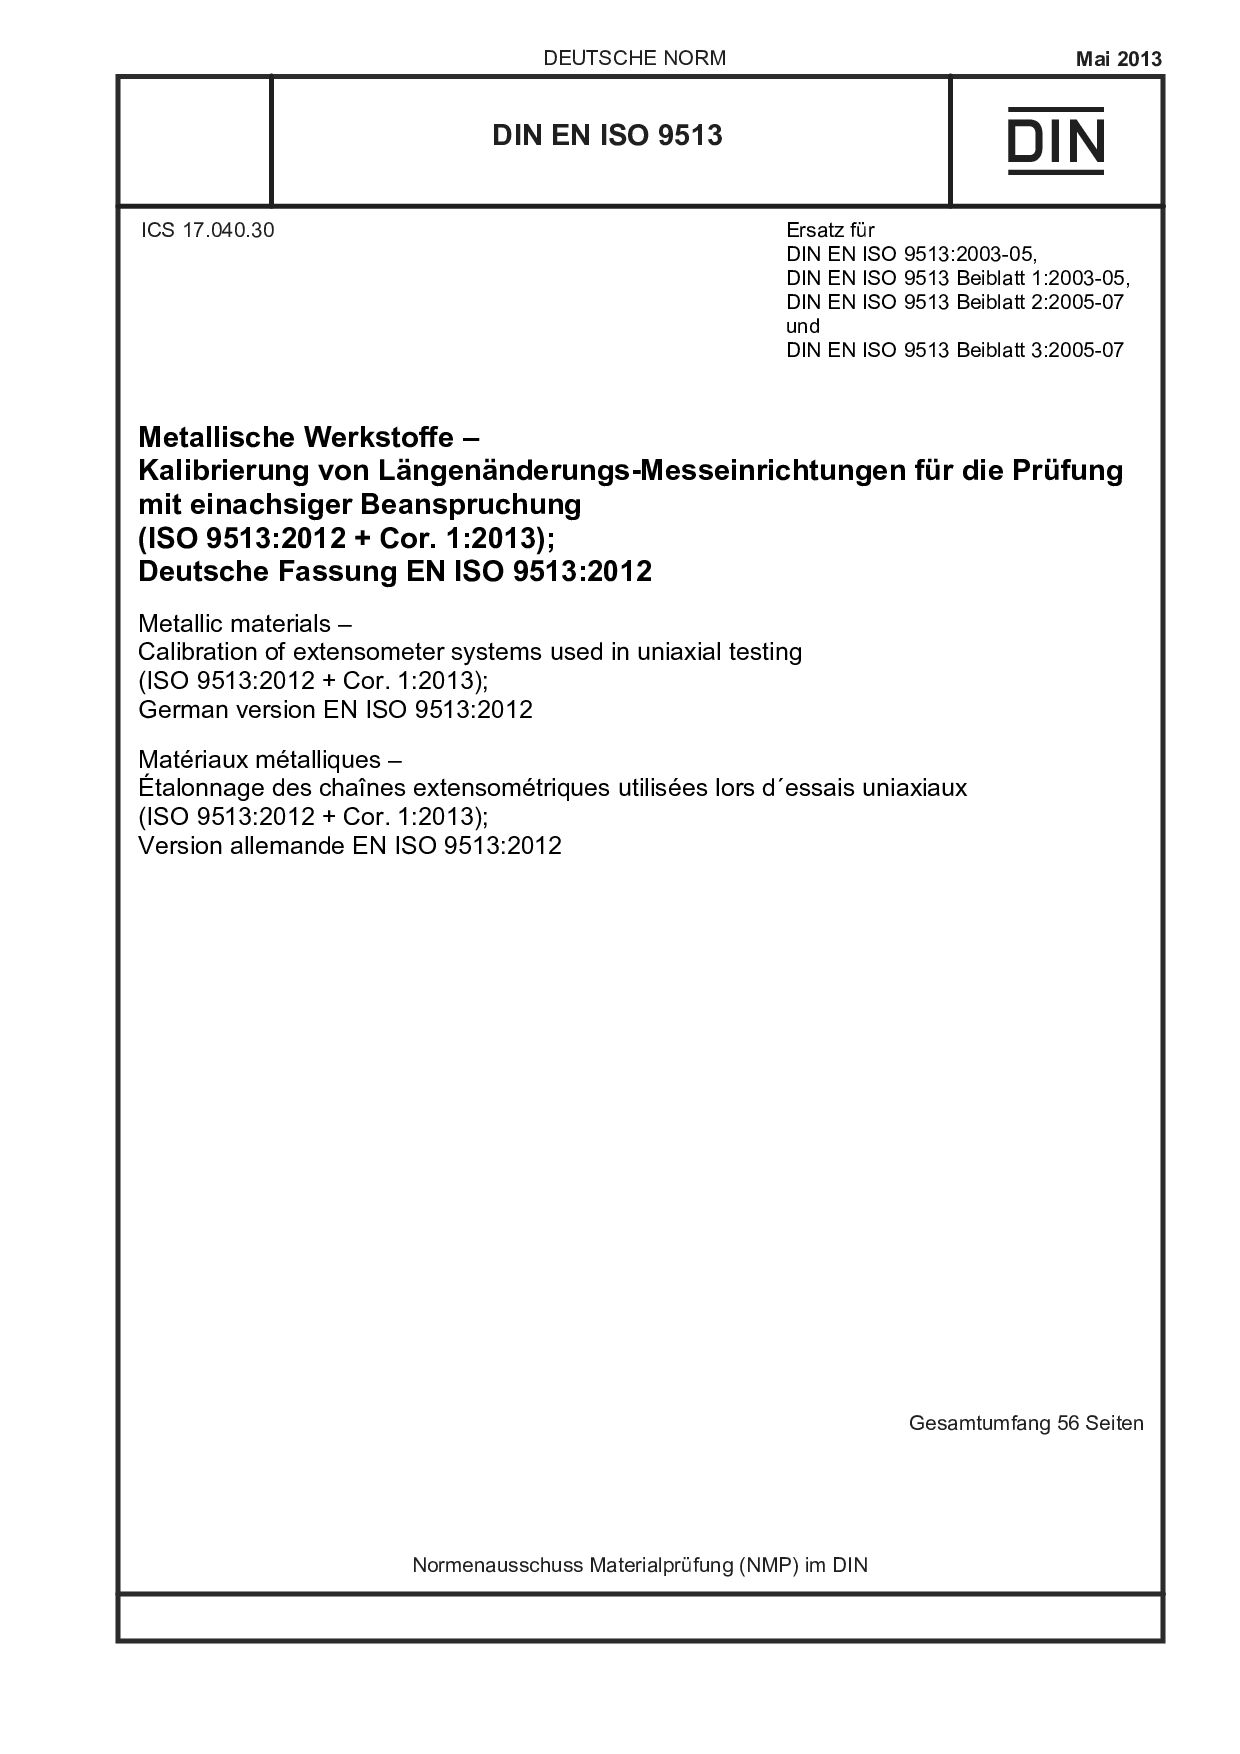 DIN EN ISO 9513:2013-05